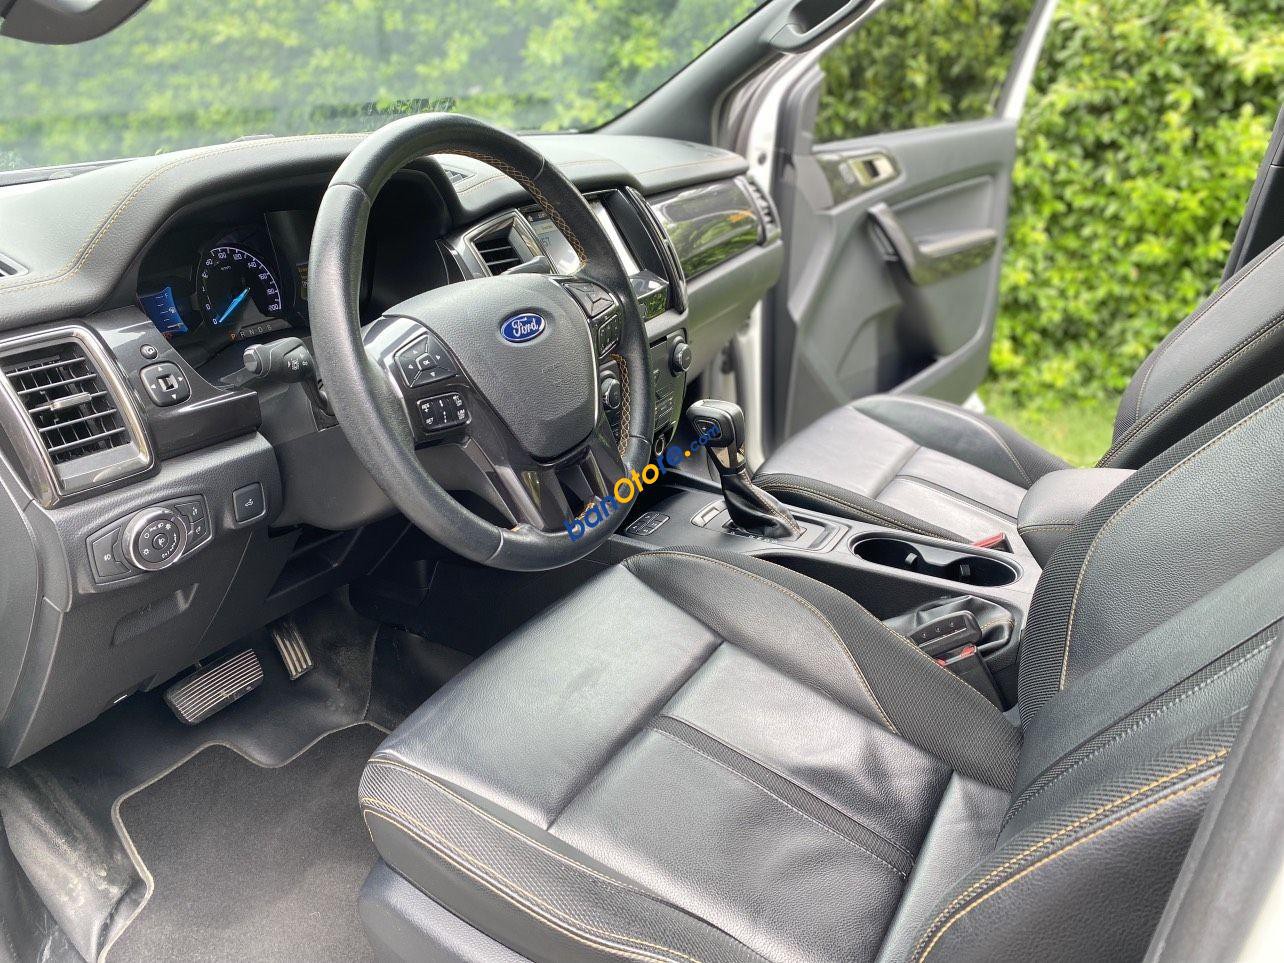 Bán gấp Ford Ranger 2.0 Wildtrak 2018, màu trắng, đã trang bị thùng nắp cuộn 30tr, bảo hàng chất lượng 1 năm, bao test